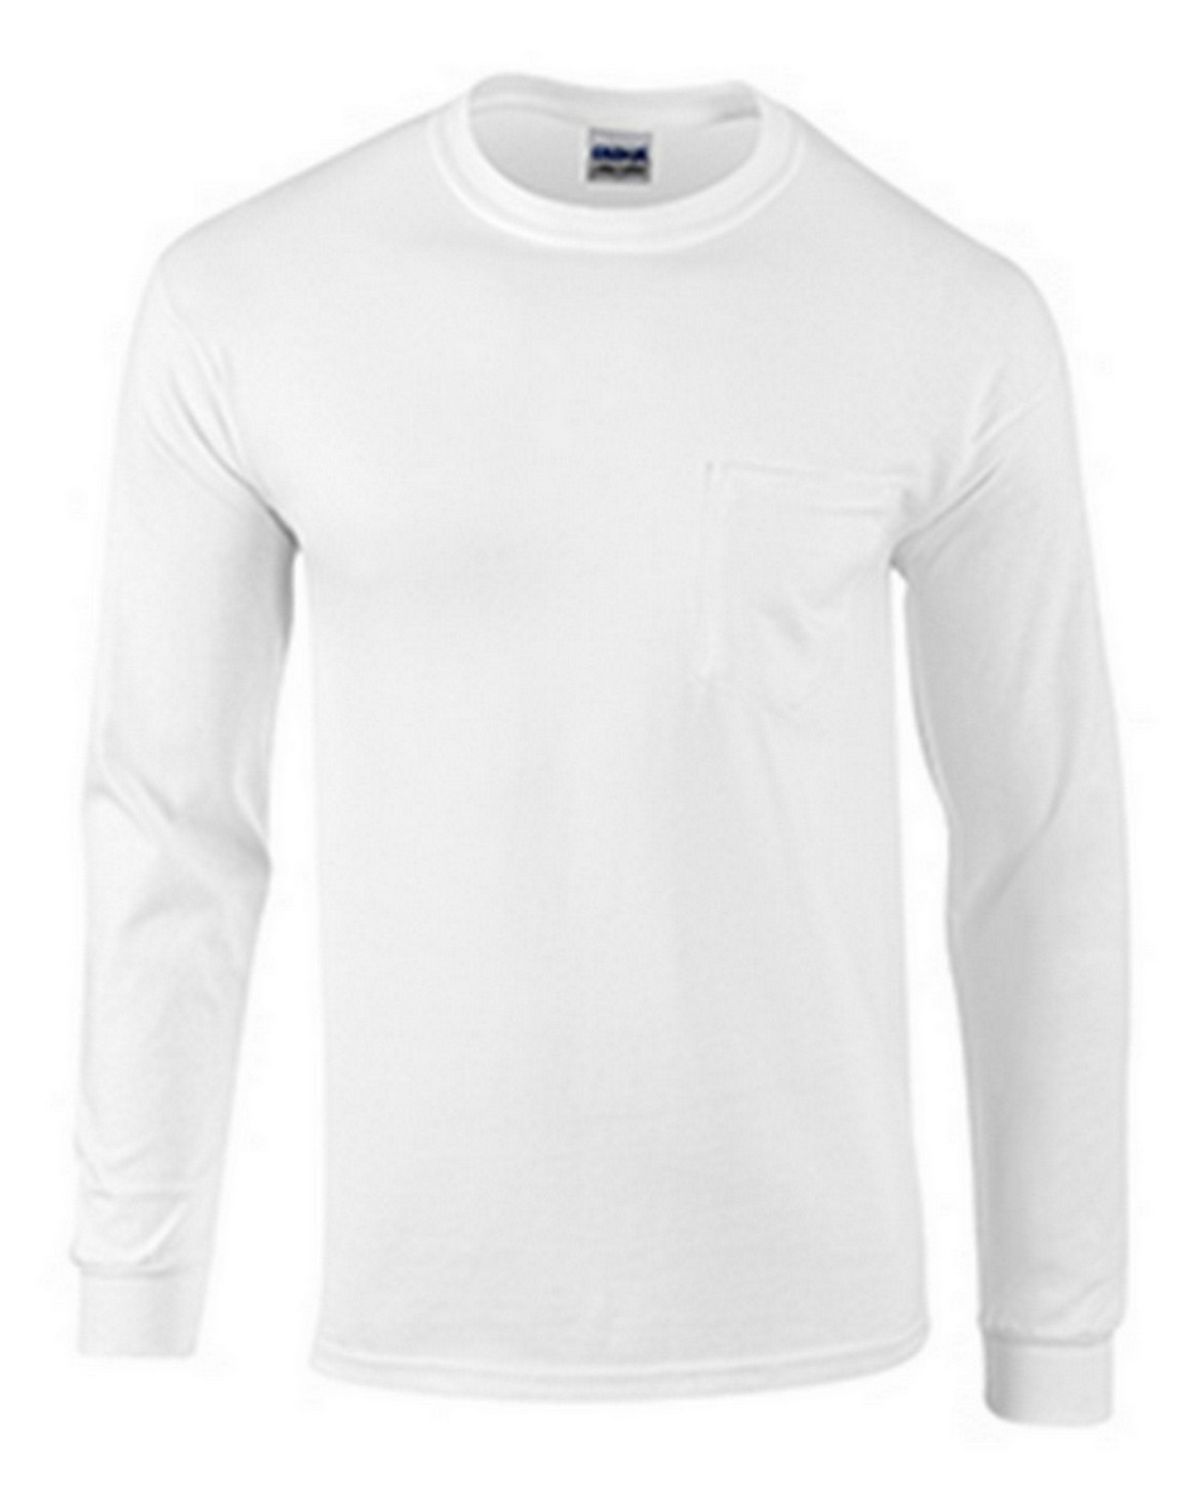 Gildan Long Sleeve T Shirt Size Chart